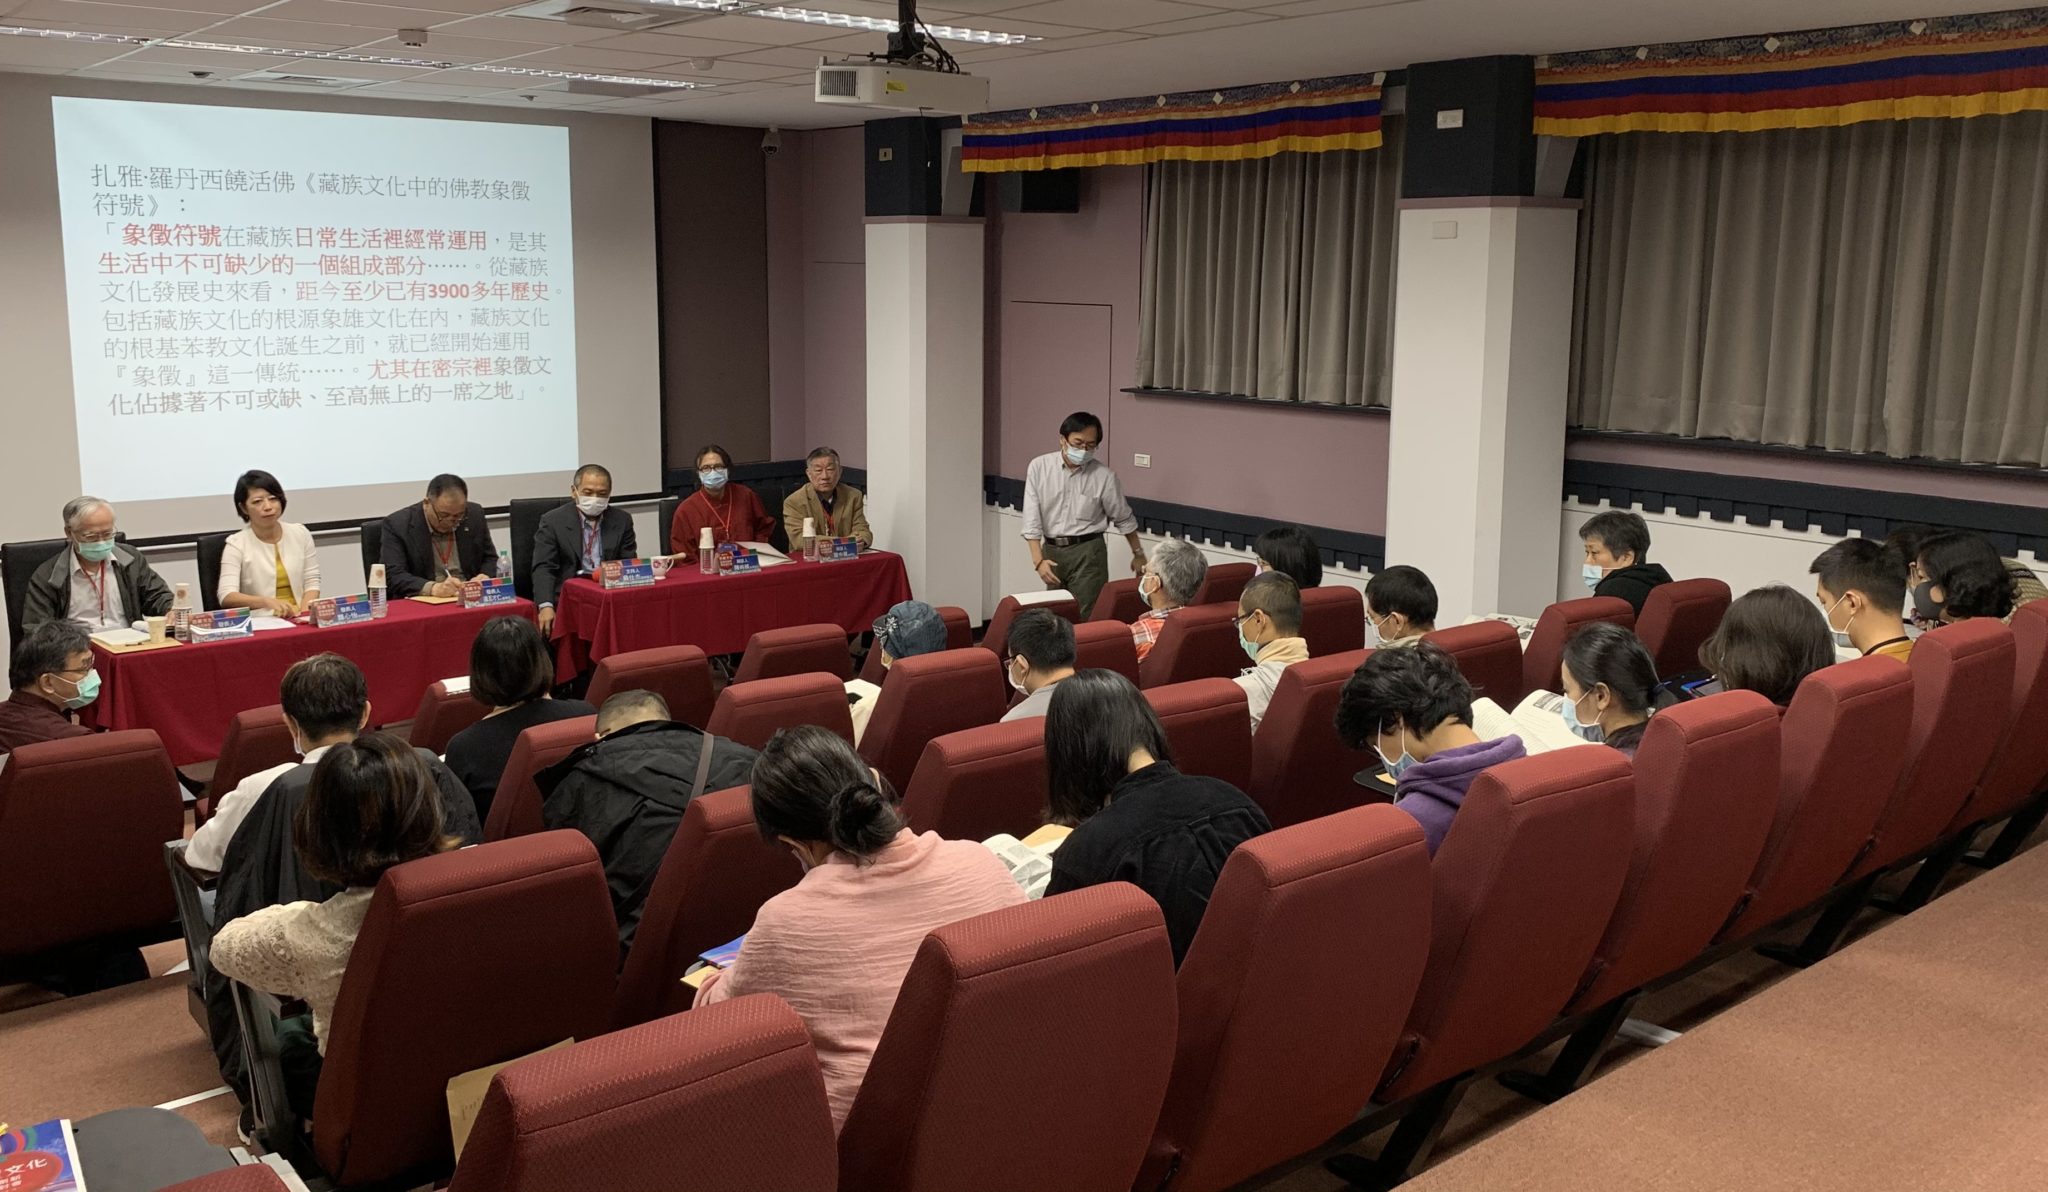 各界专家和学者在“西藏文化发展与创新学术研讨会”上探讨西藏的语言、文化和宗教传统    2020年11月14日   照片/驻台湾办事处提供